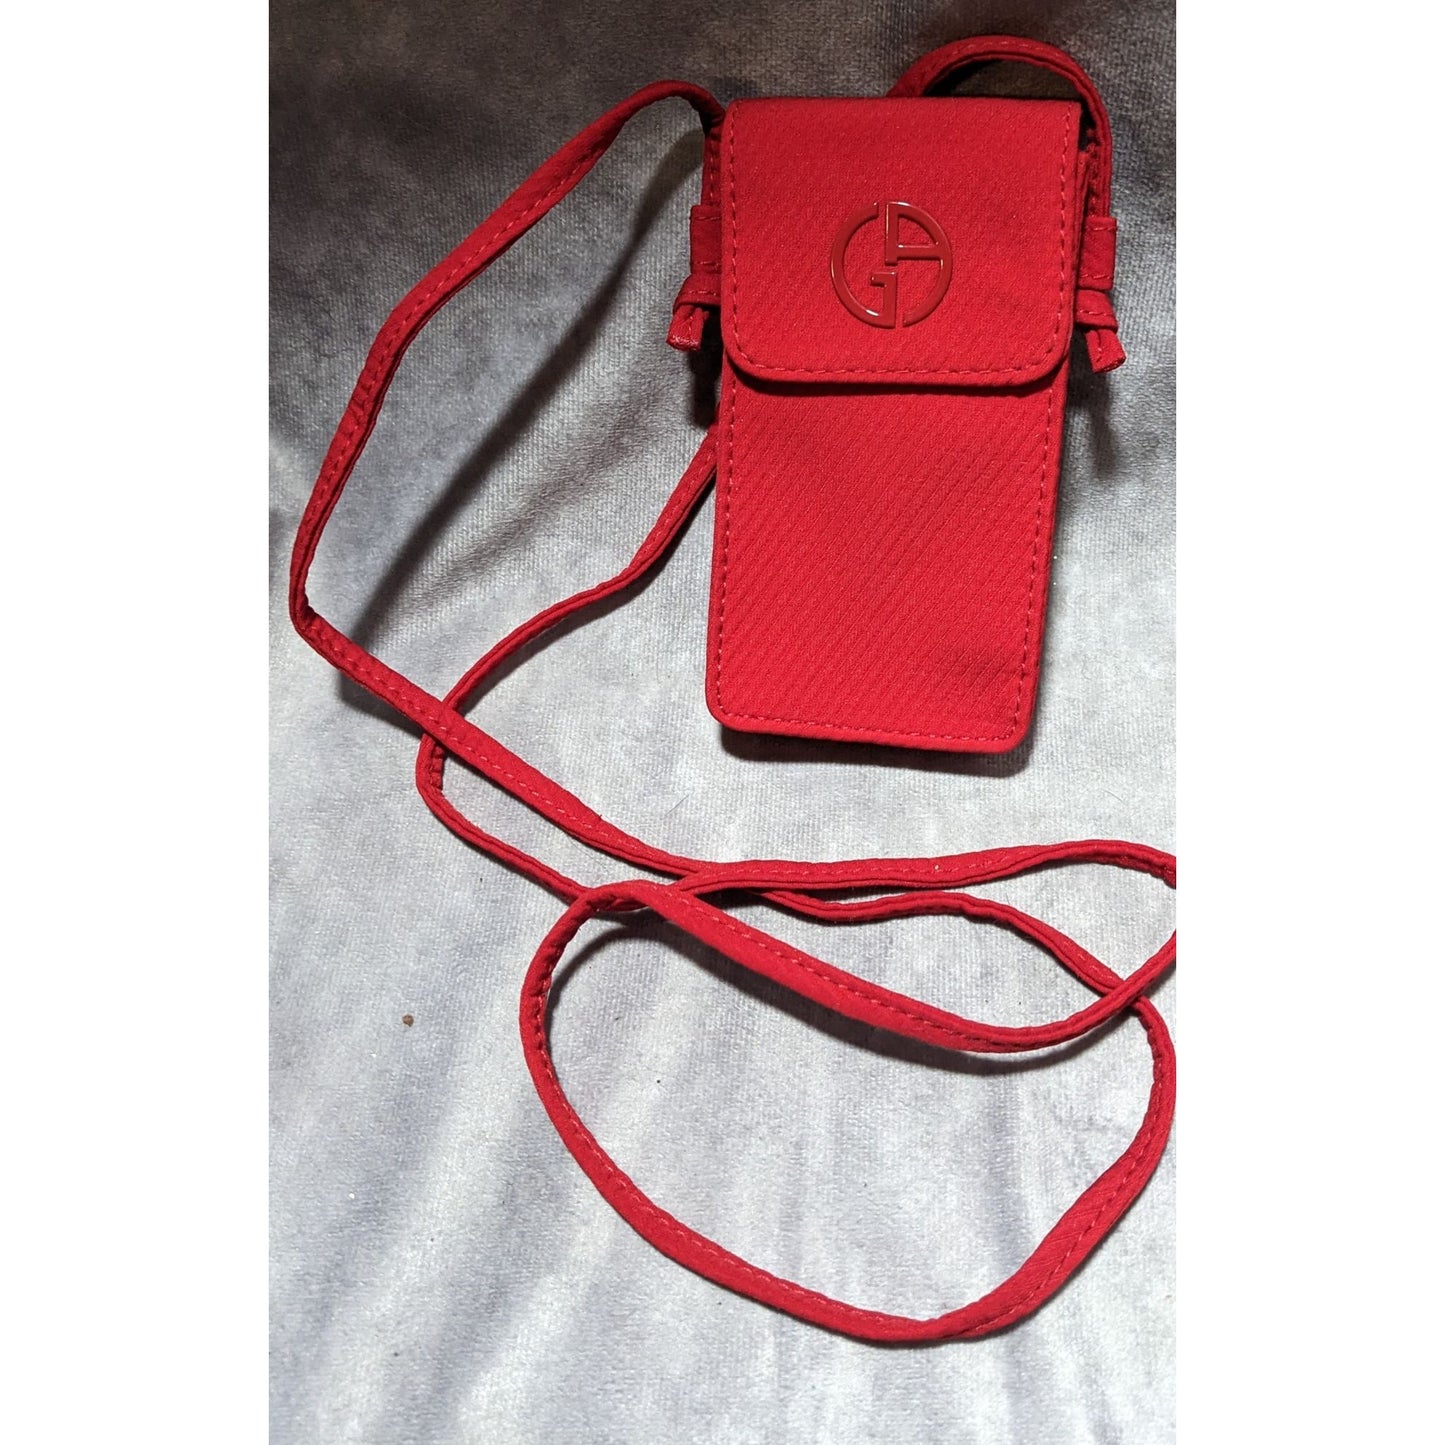 Giorgio Armani Beauty Red Mini Bag